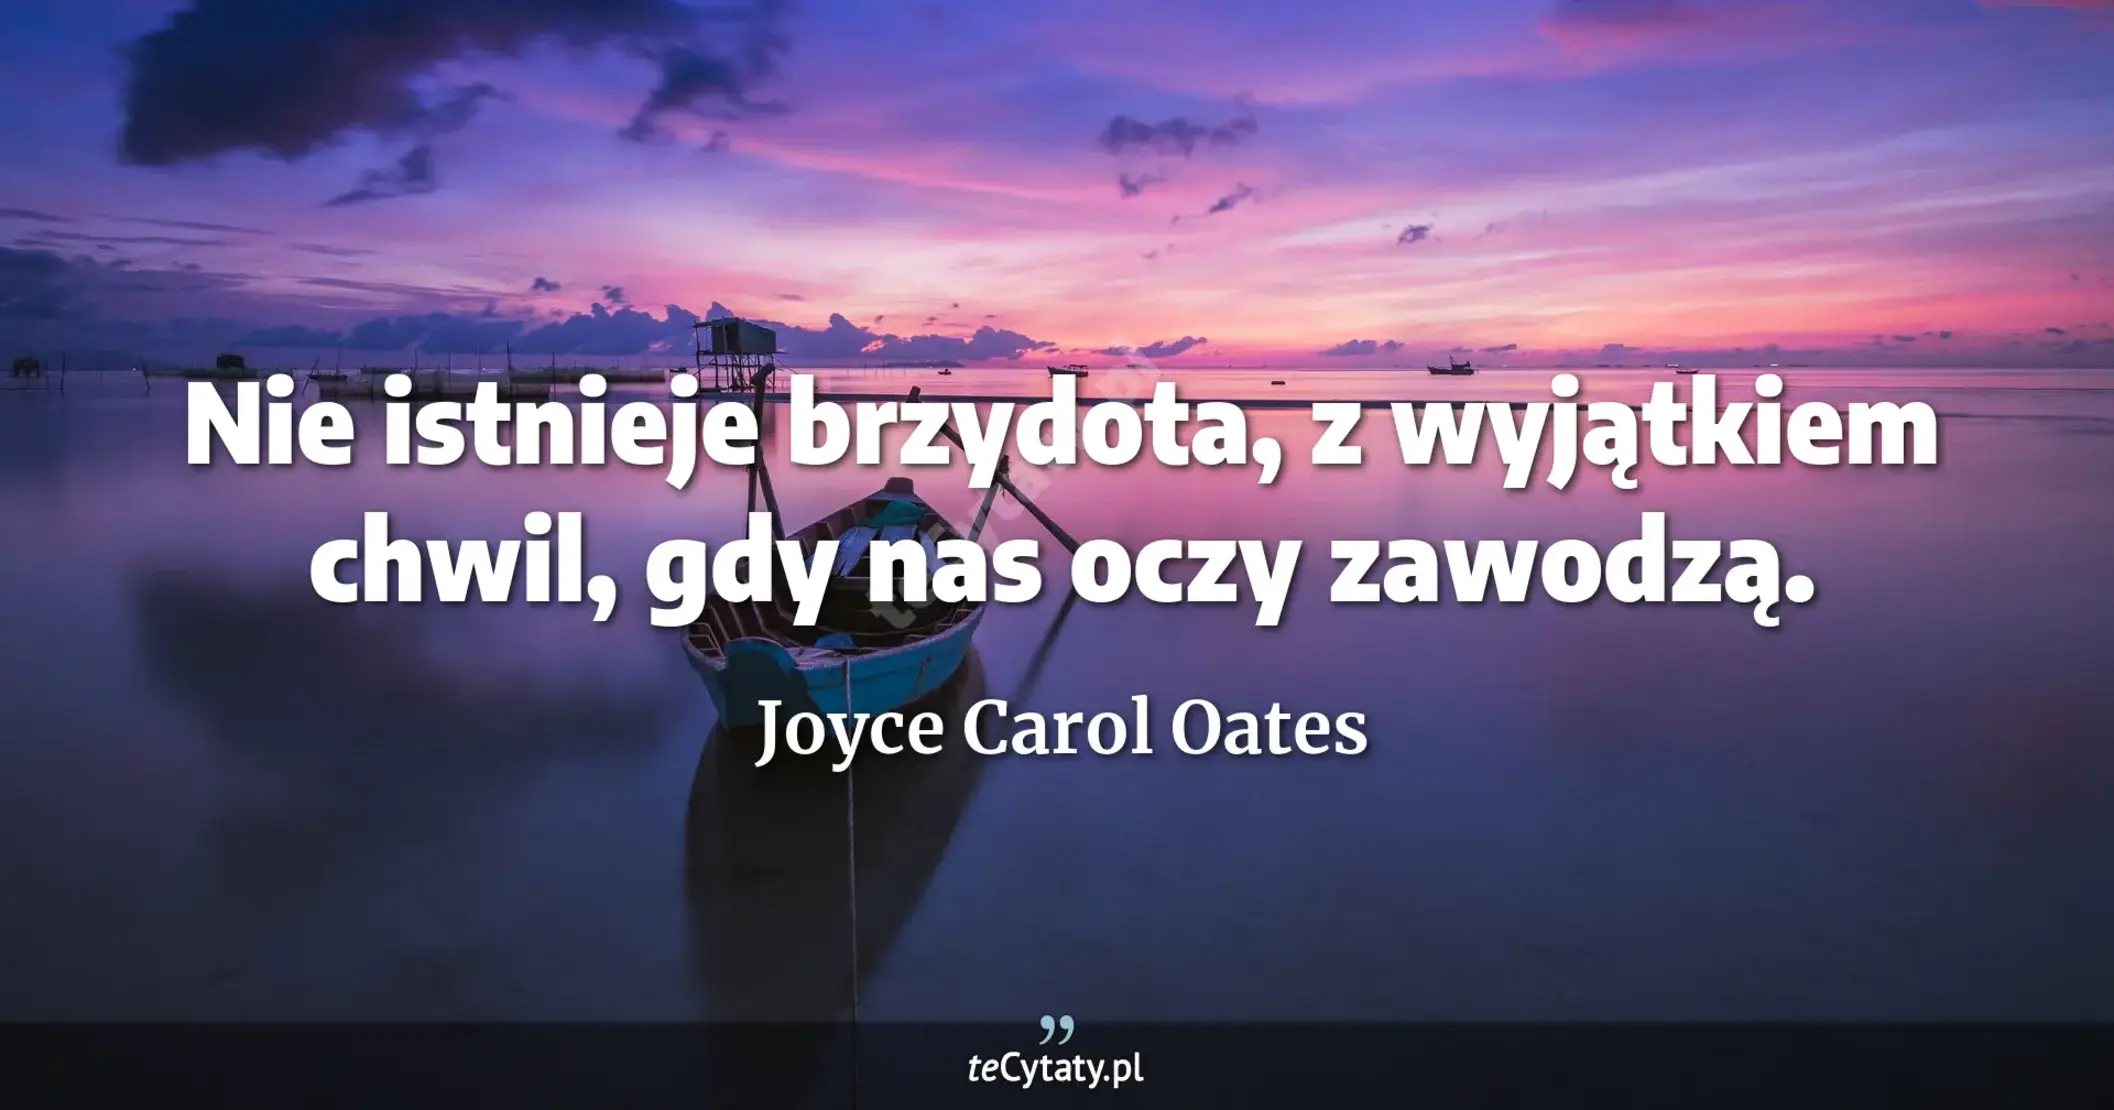 Nie istnieje brzydota, z wyjątkiem chwil, gdy nas oczy zawodzą. - Joyce Carol Oates